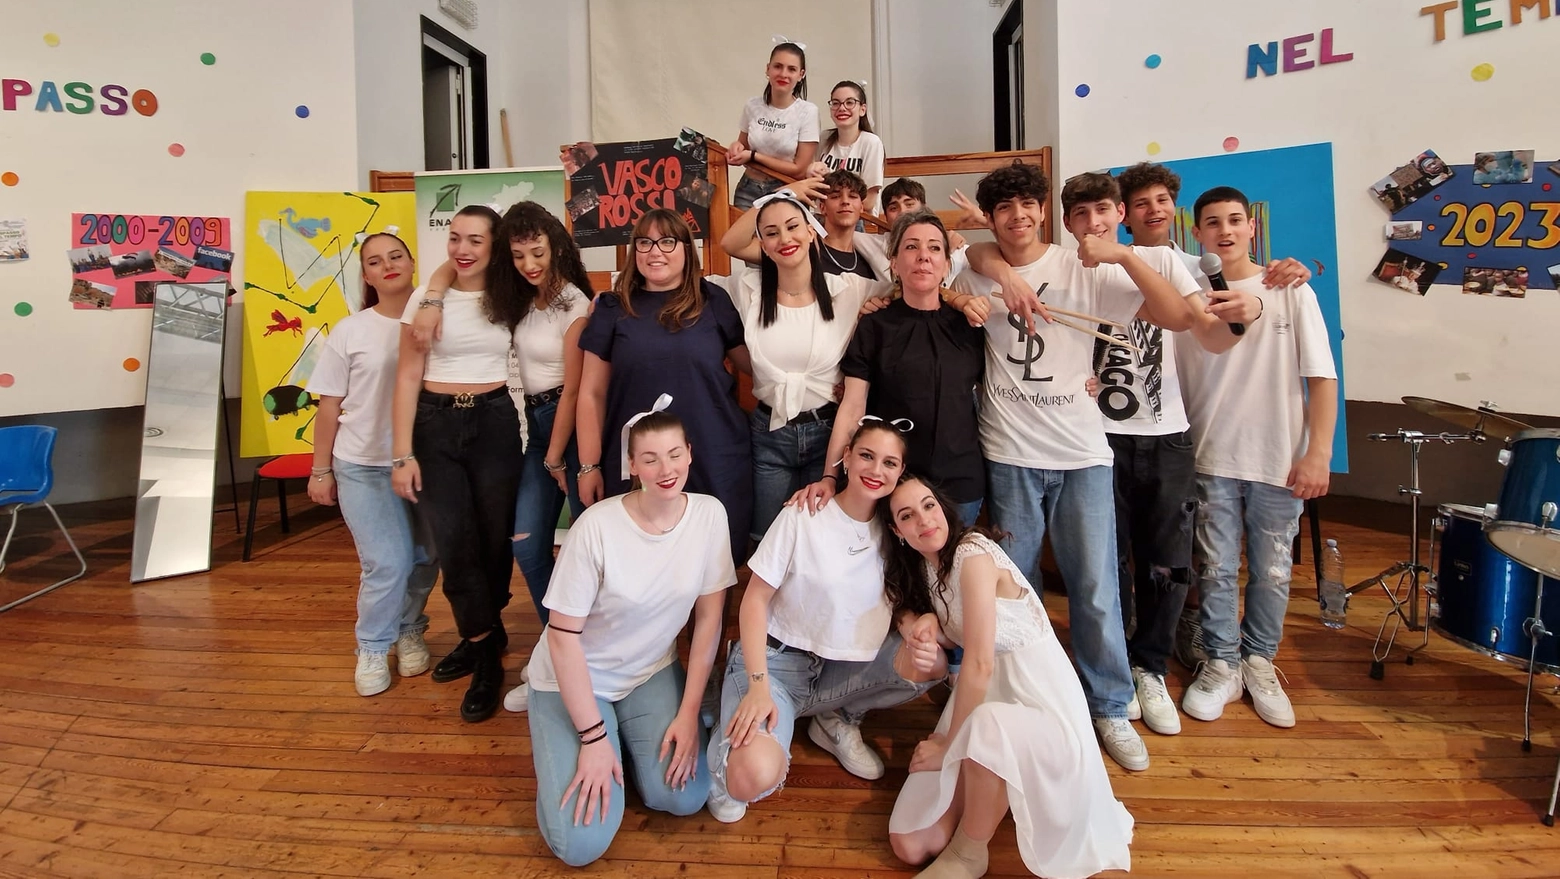 Gli studenti dell'Enaip di Porto Viro coinvolti nello spettacolo